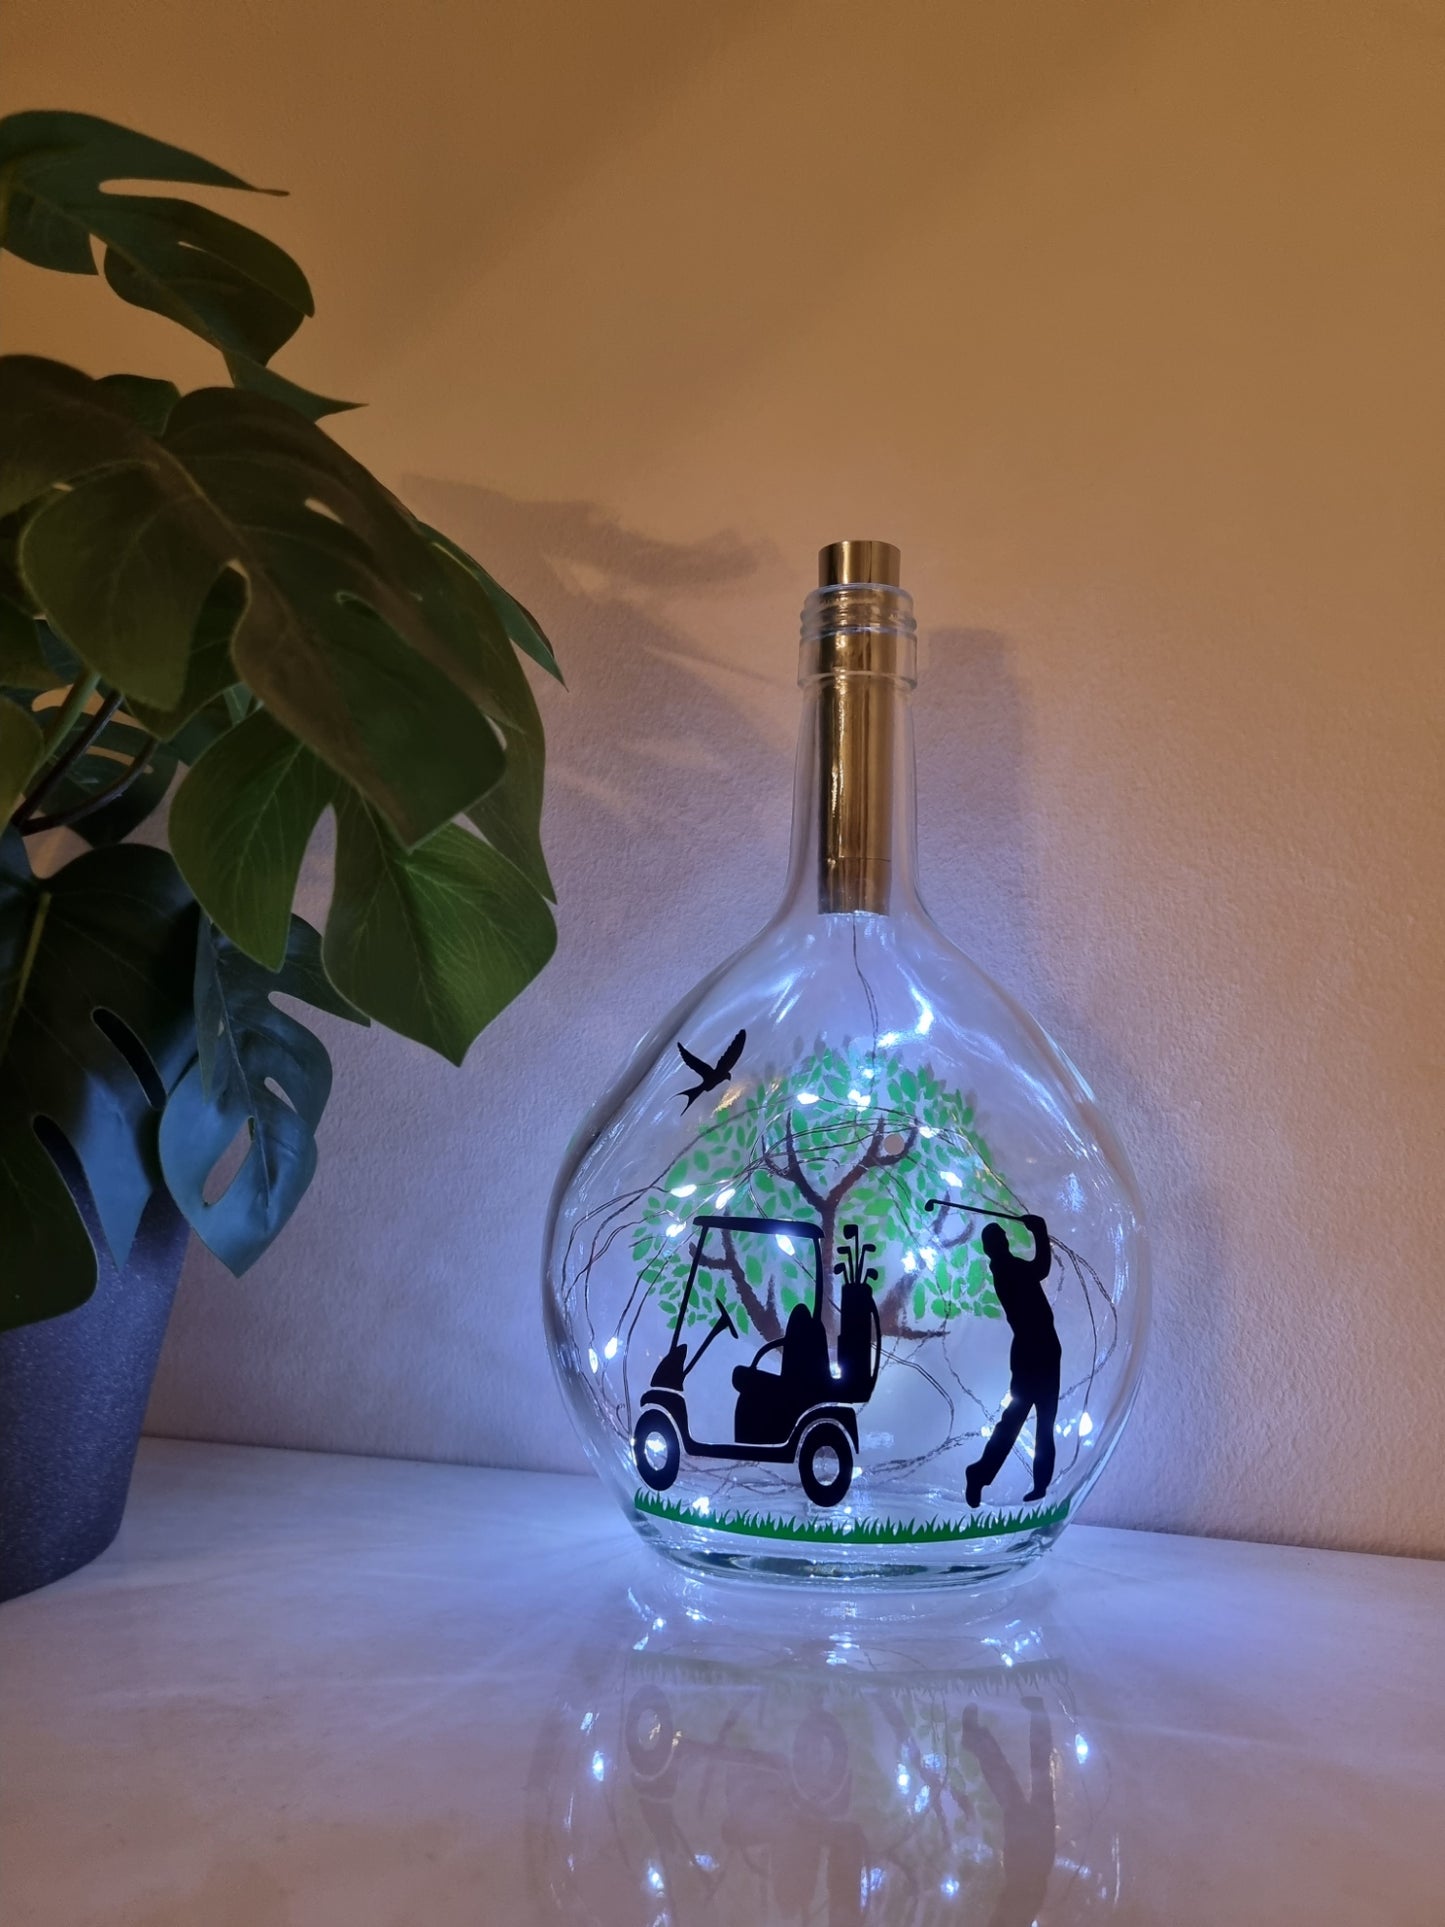 Golf Themed Glass Light Up Bottle / Night Lamp